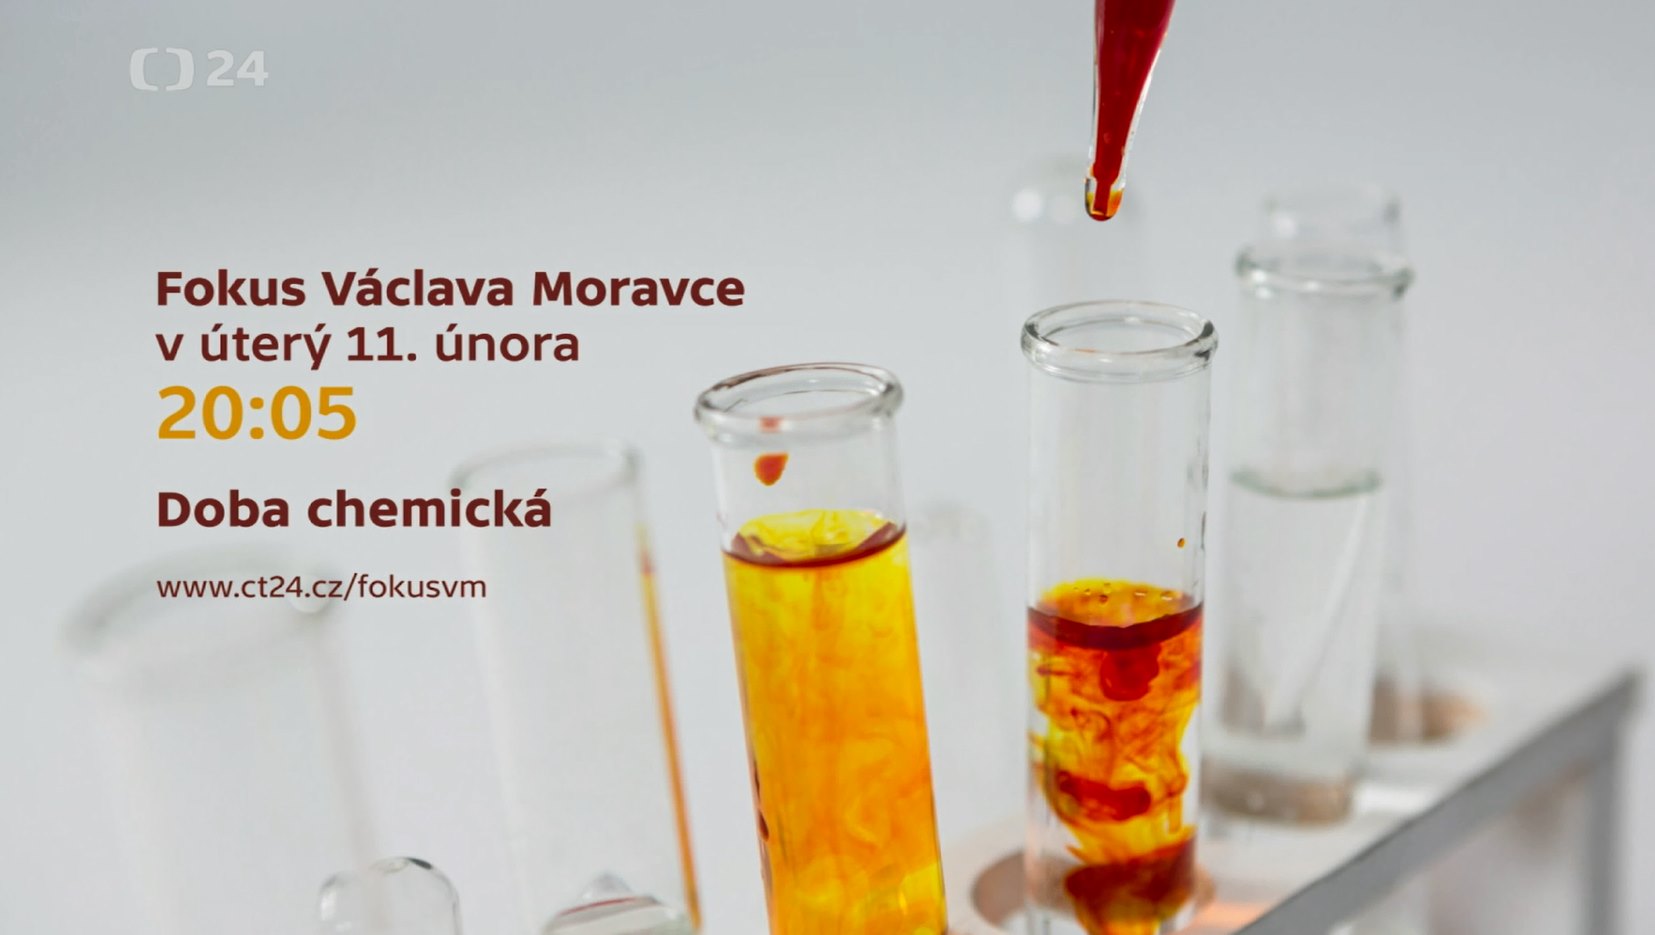 Fokus Václava Moravce: Doba chemická